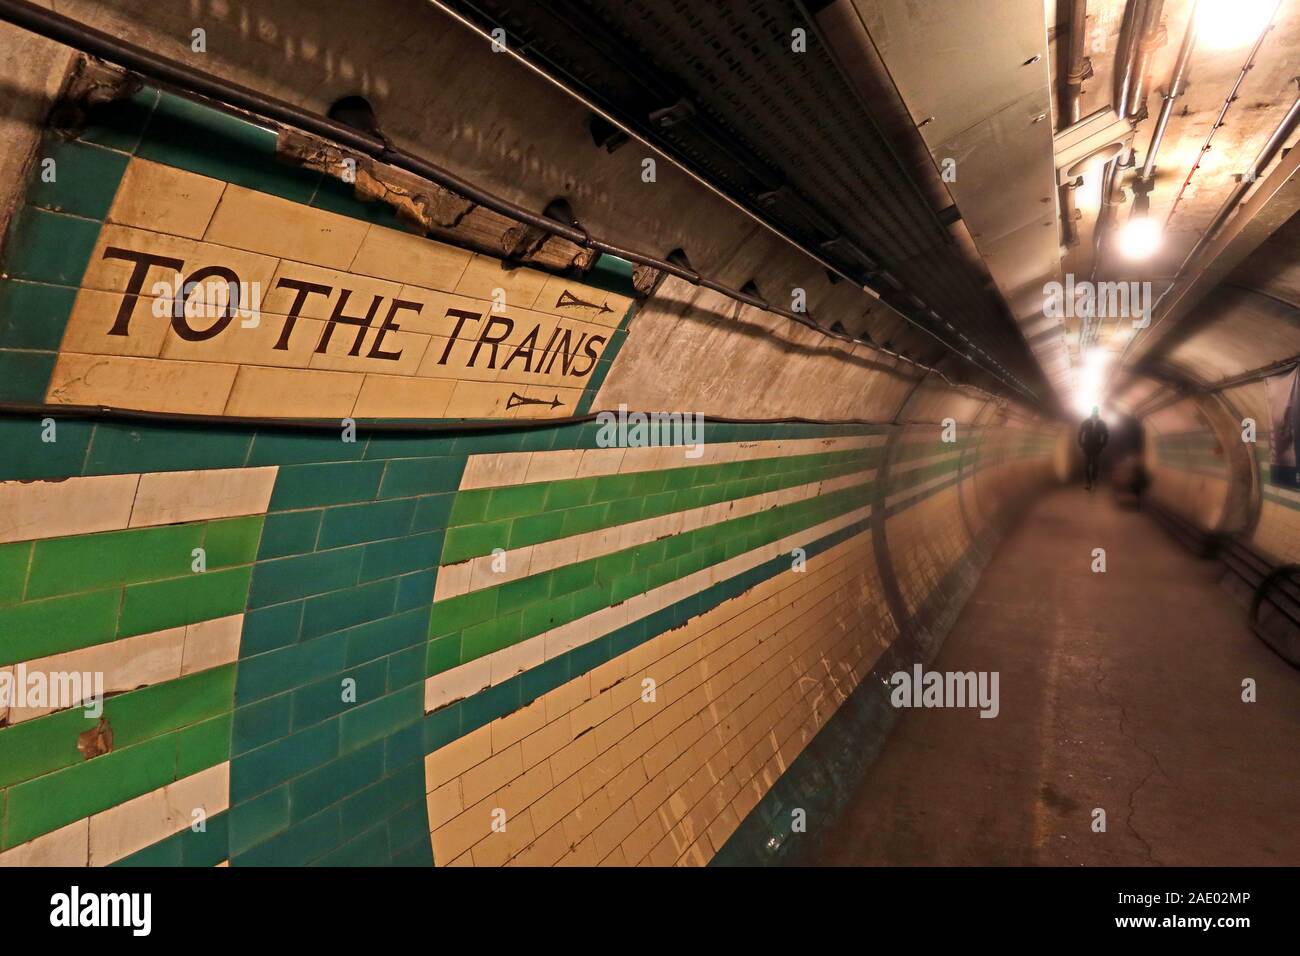 Per i treni segno, Londra tunnel sotterraneo, giù nella stazione della metropolitana a mezzanotte, Londra, Inghilterra sud-orientale, REGNO UNITO Foto Stock